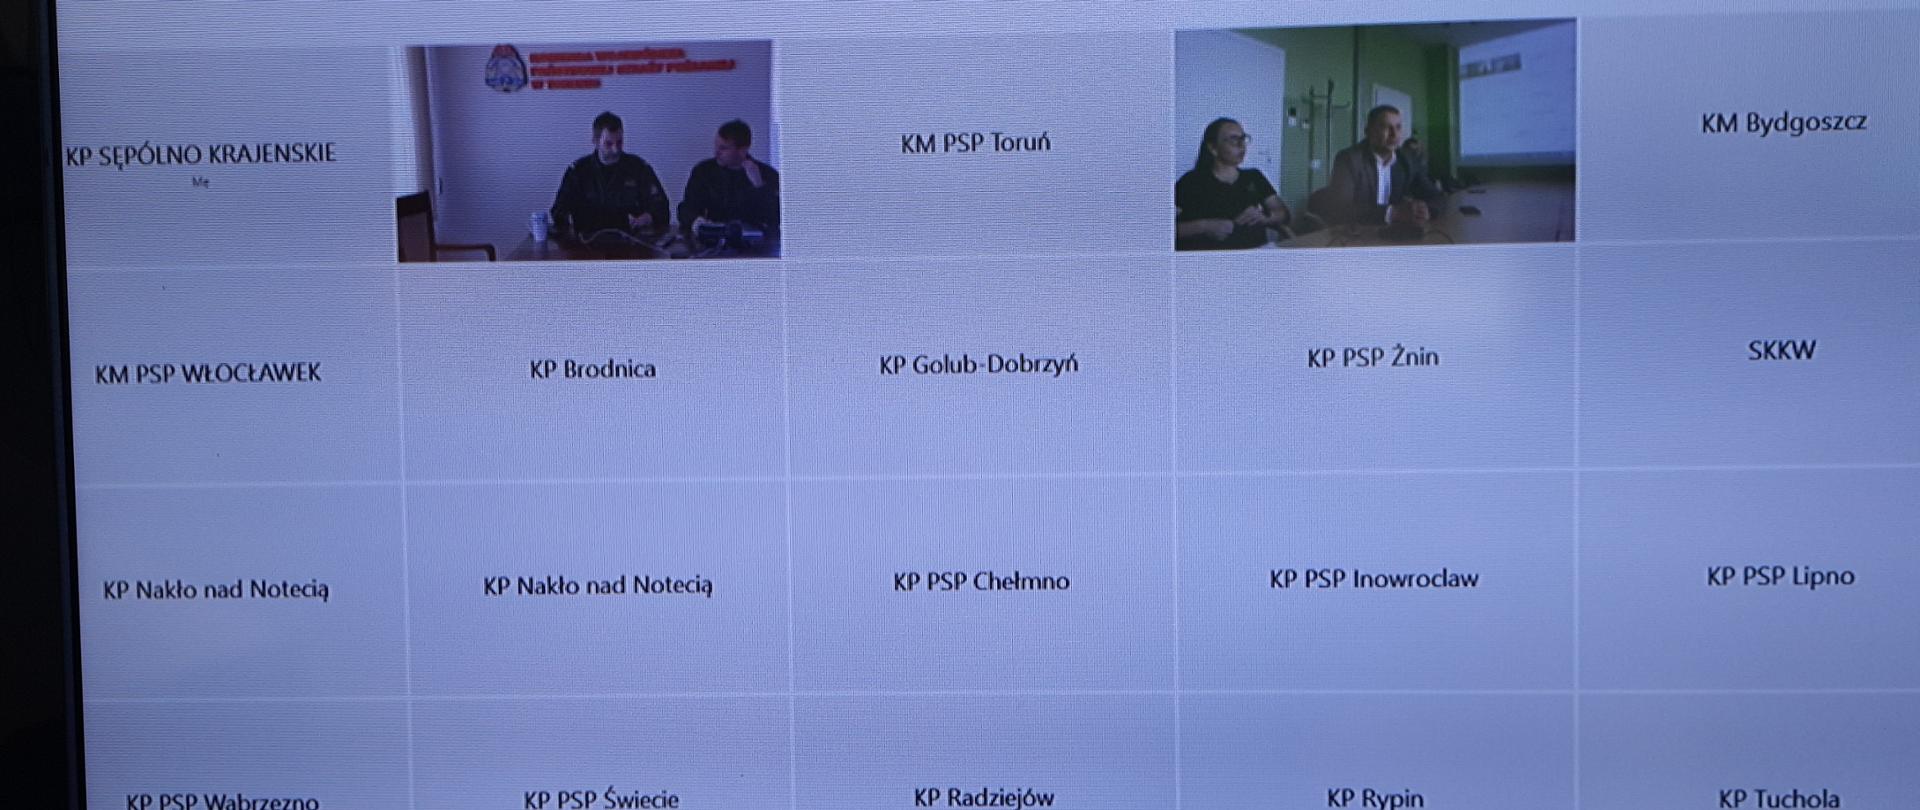 zdjęcie przedstawia monitor telewizyjny na którym wyświetlone są nazwy wszystkich komend powiatowych i miejskich województwa kujawsko-pomorskiego biorących udział w szkoleniu - wideokonferencji.